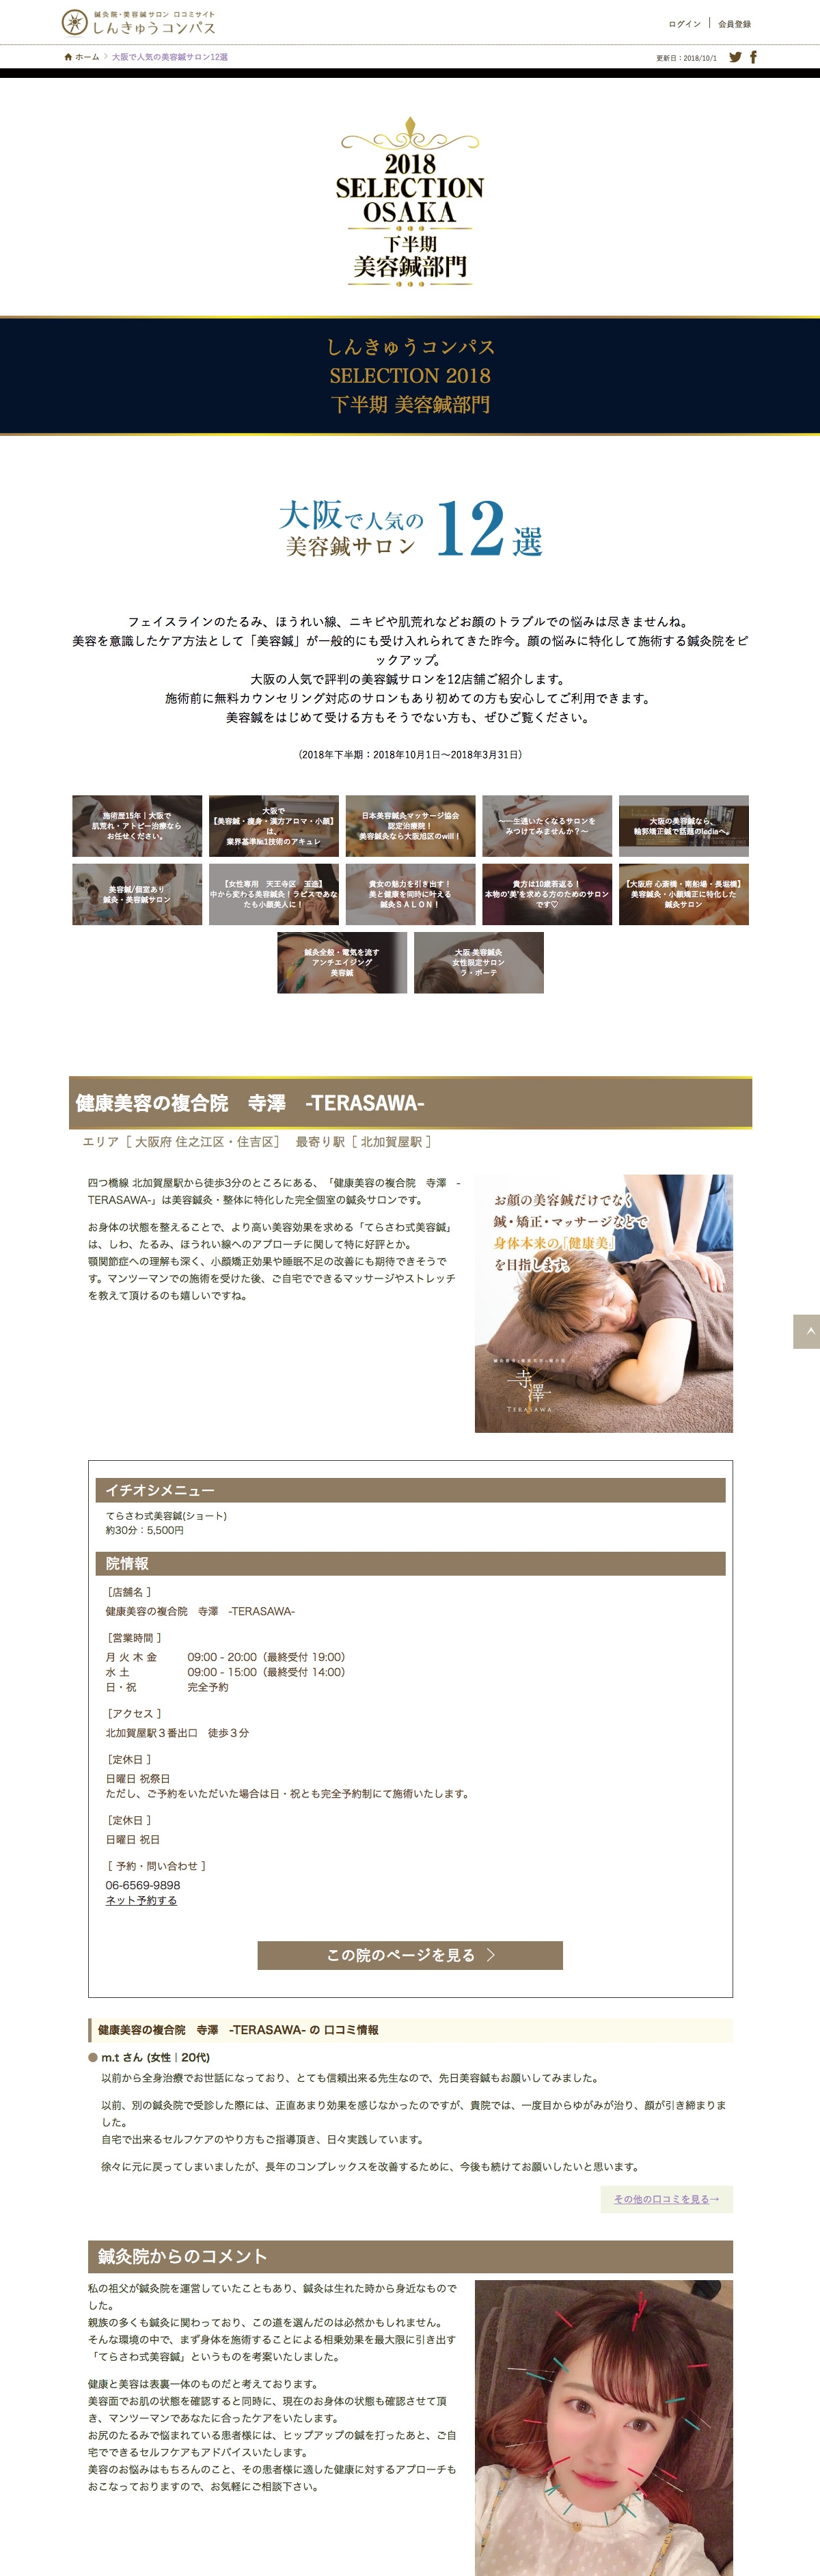 しんきゅうコンパス「大阪で人気の美容鍼灸サロン10選」選出